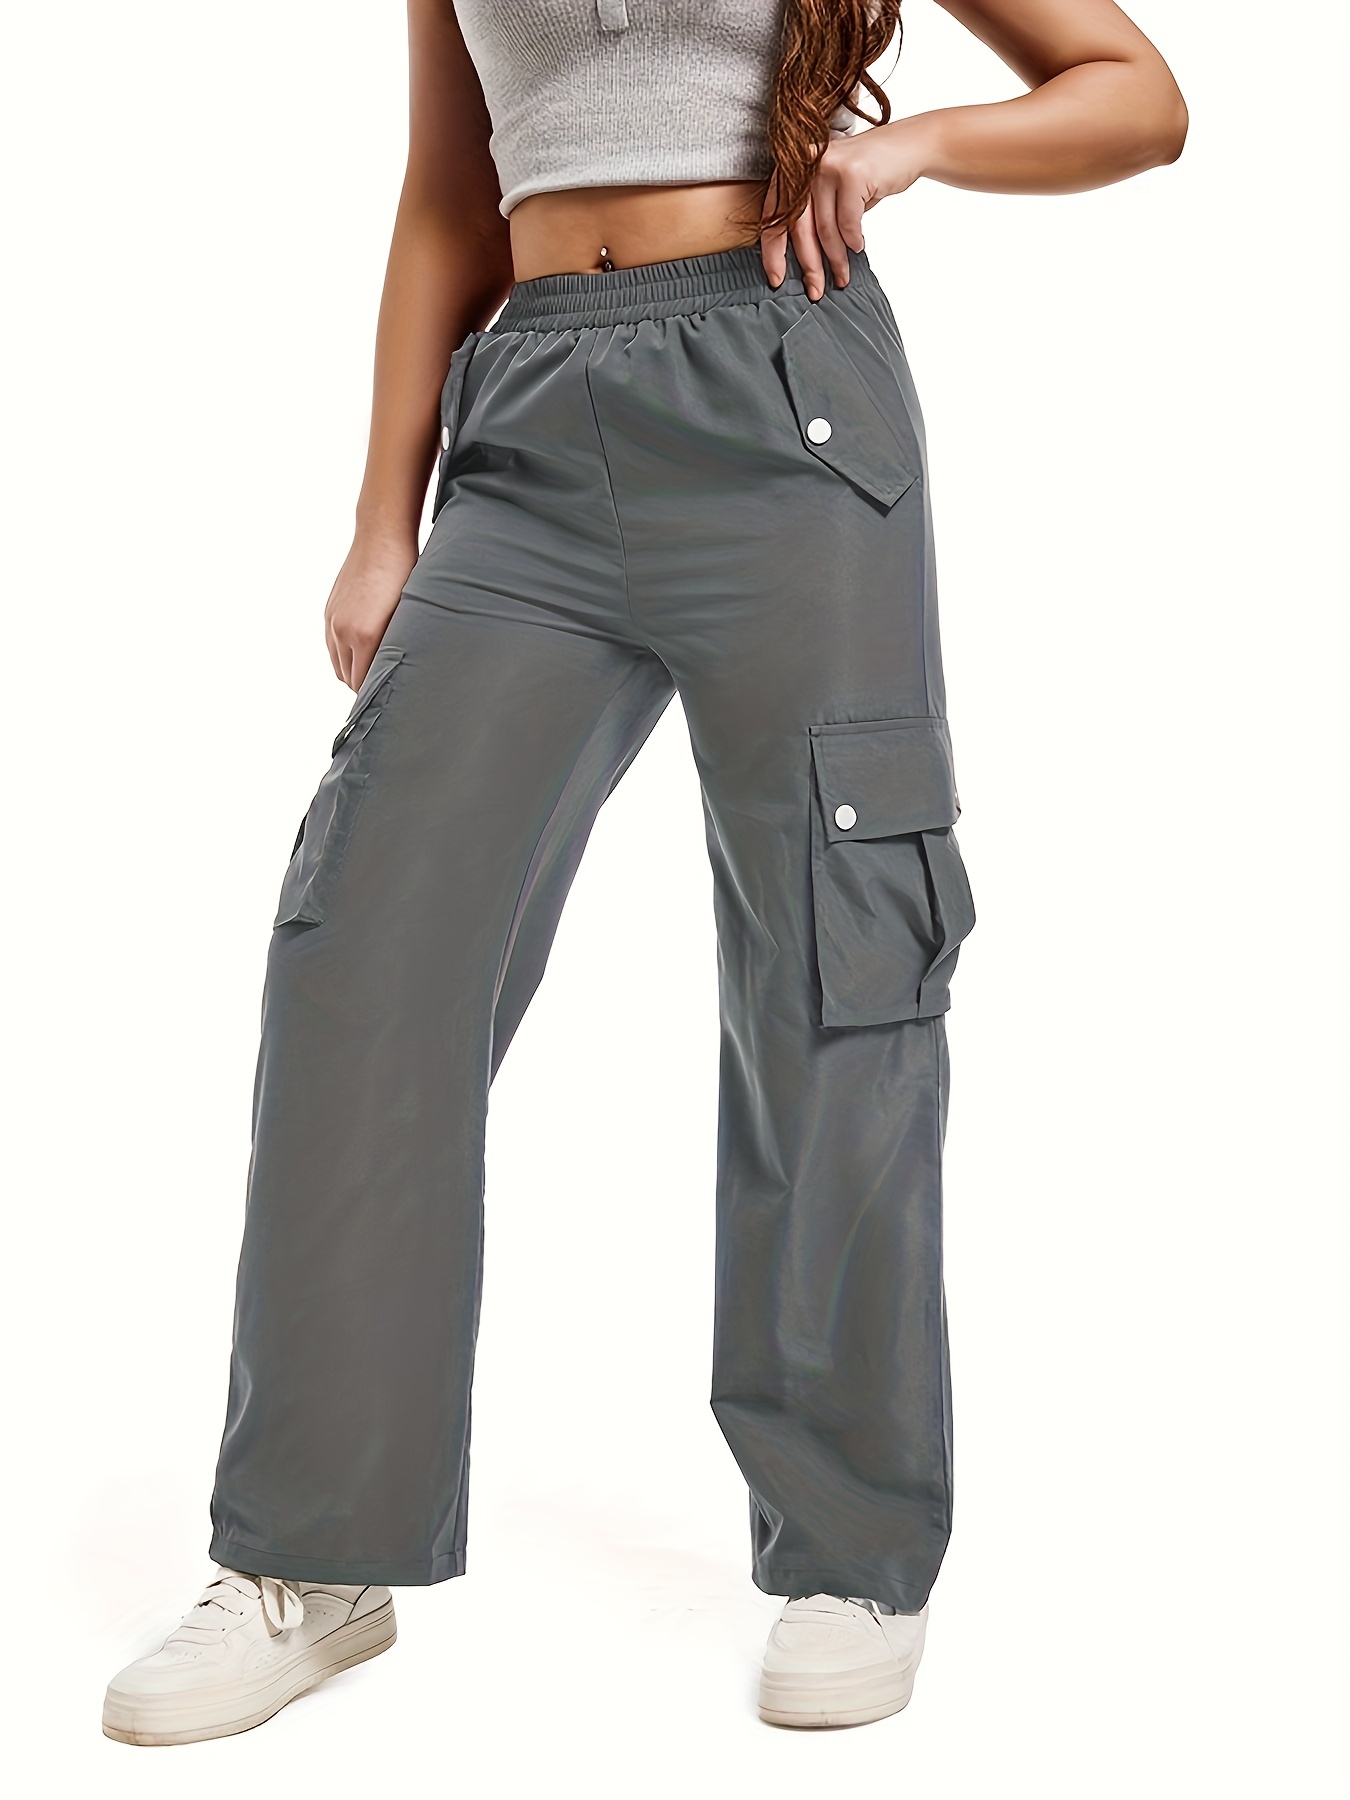 Women's Elastic High Waist Flap Pocket Cargo Pants Grey 